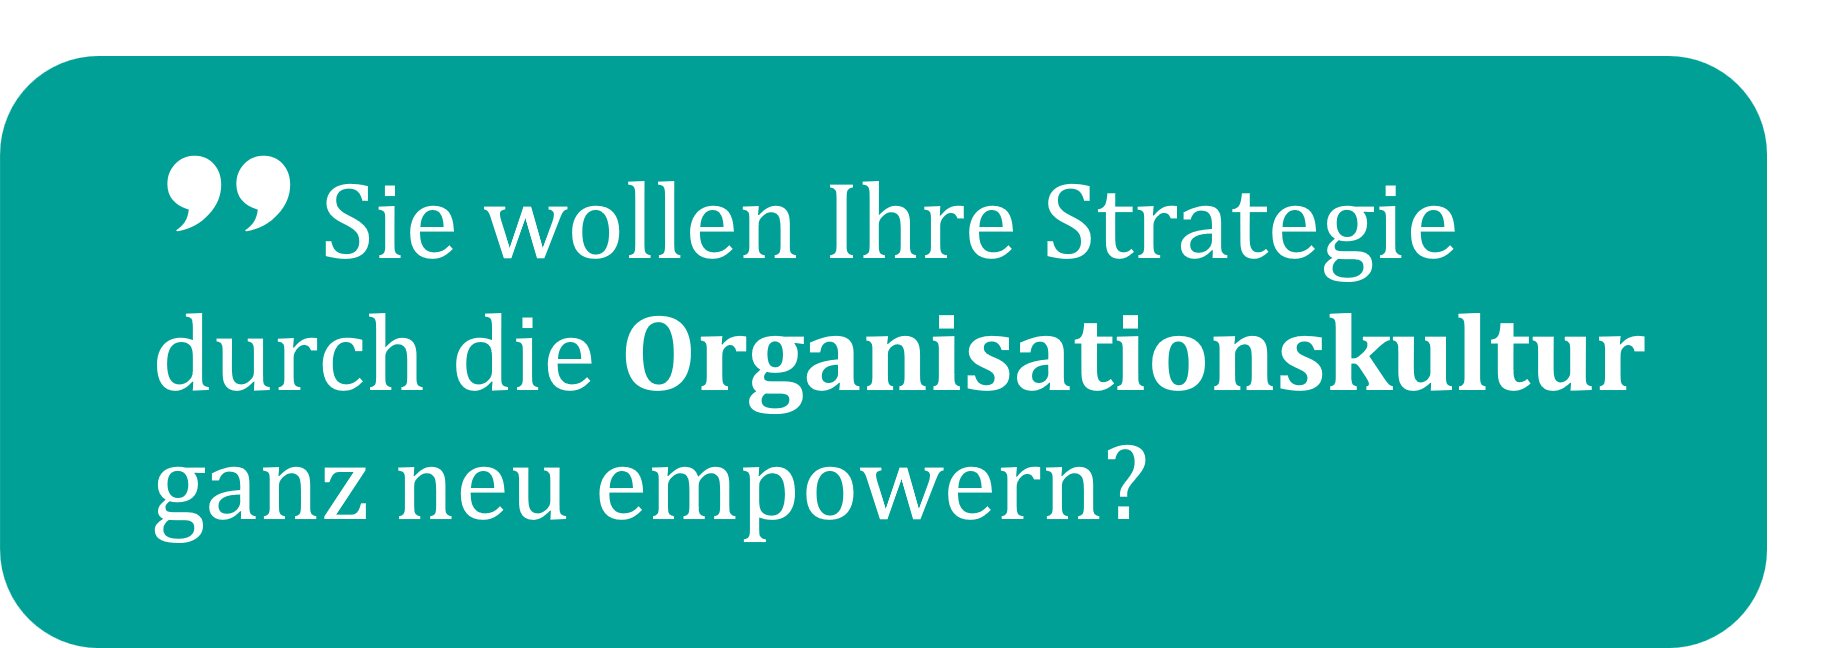 Organisationskultur und Strategie